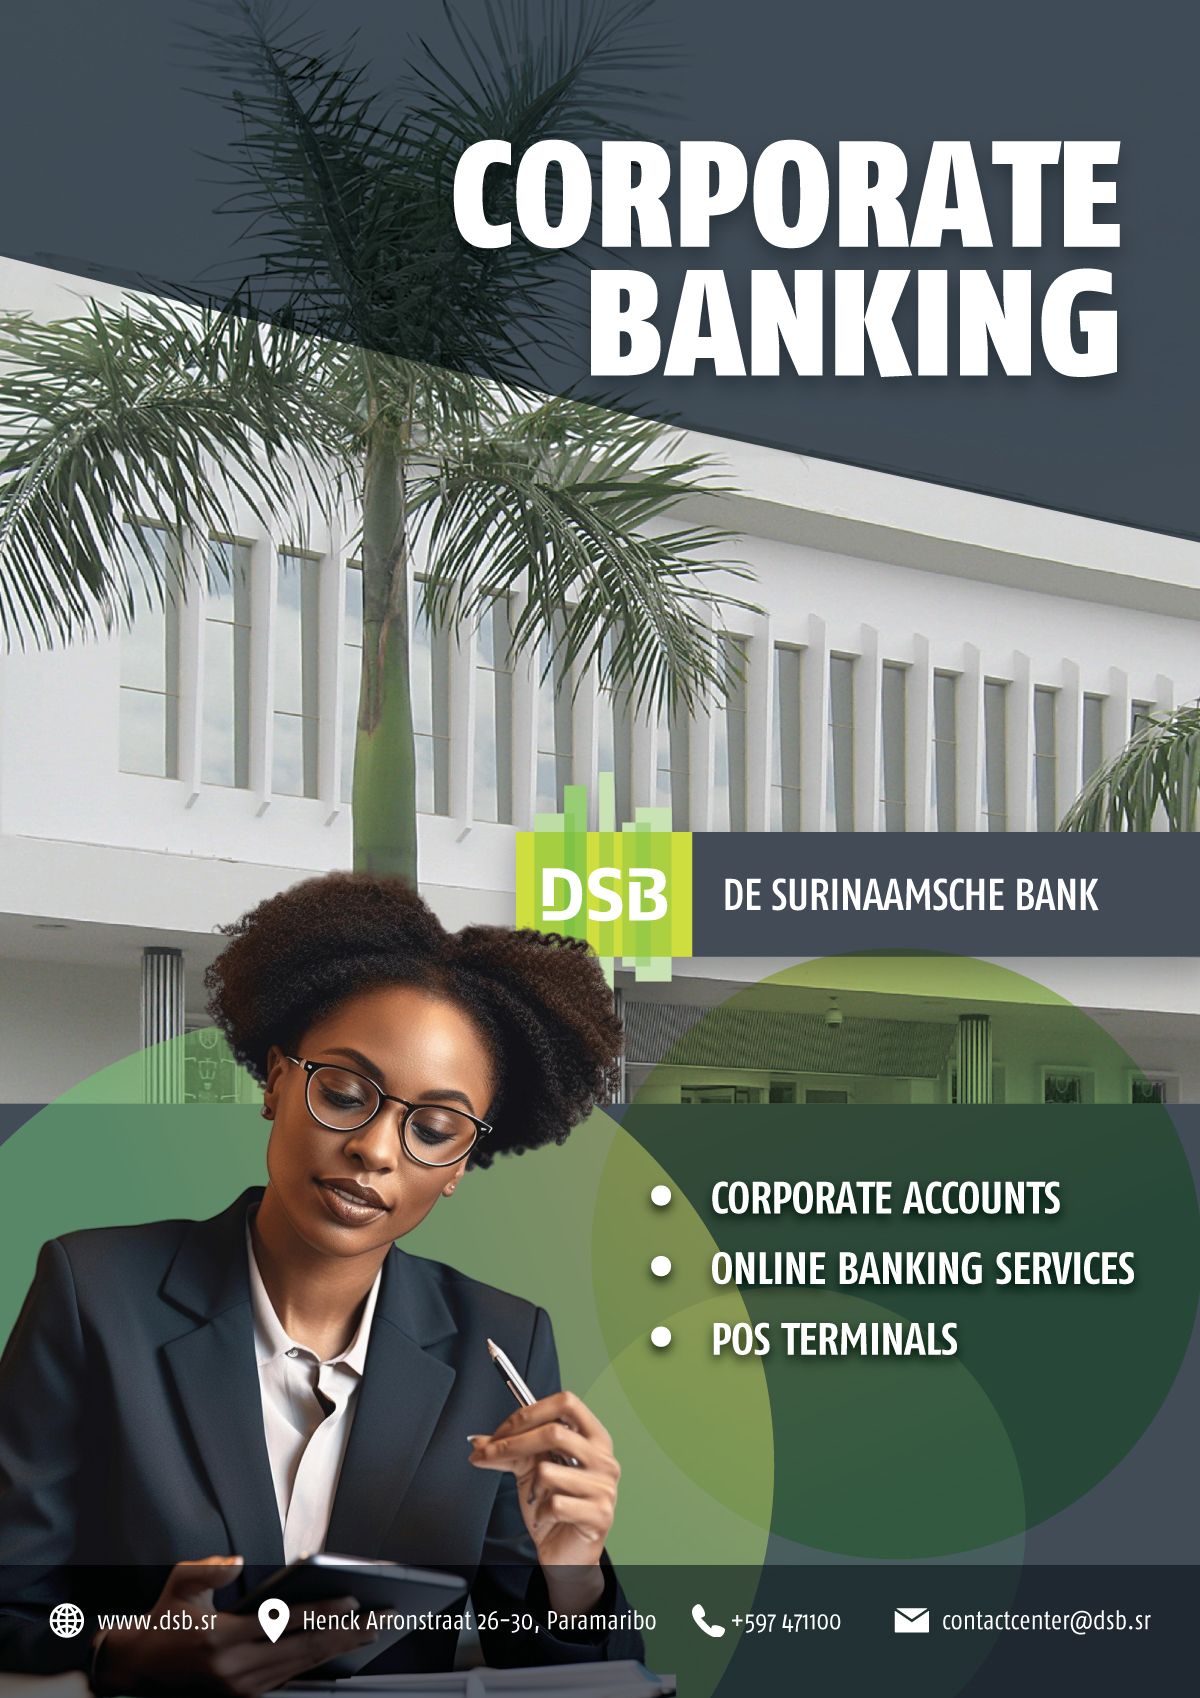 De Surinaamsche Bank N.V. (DSB)